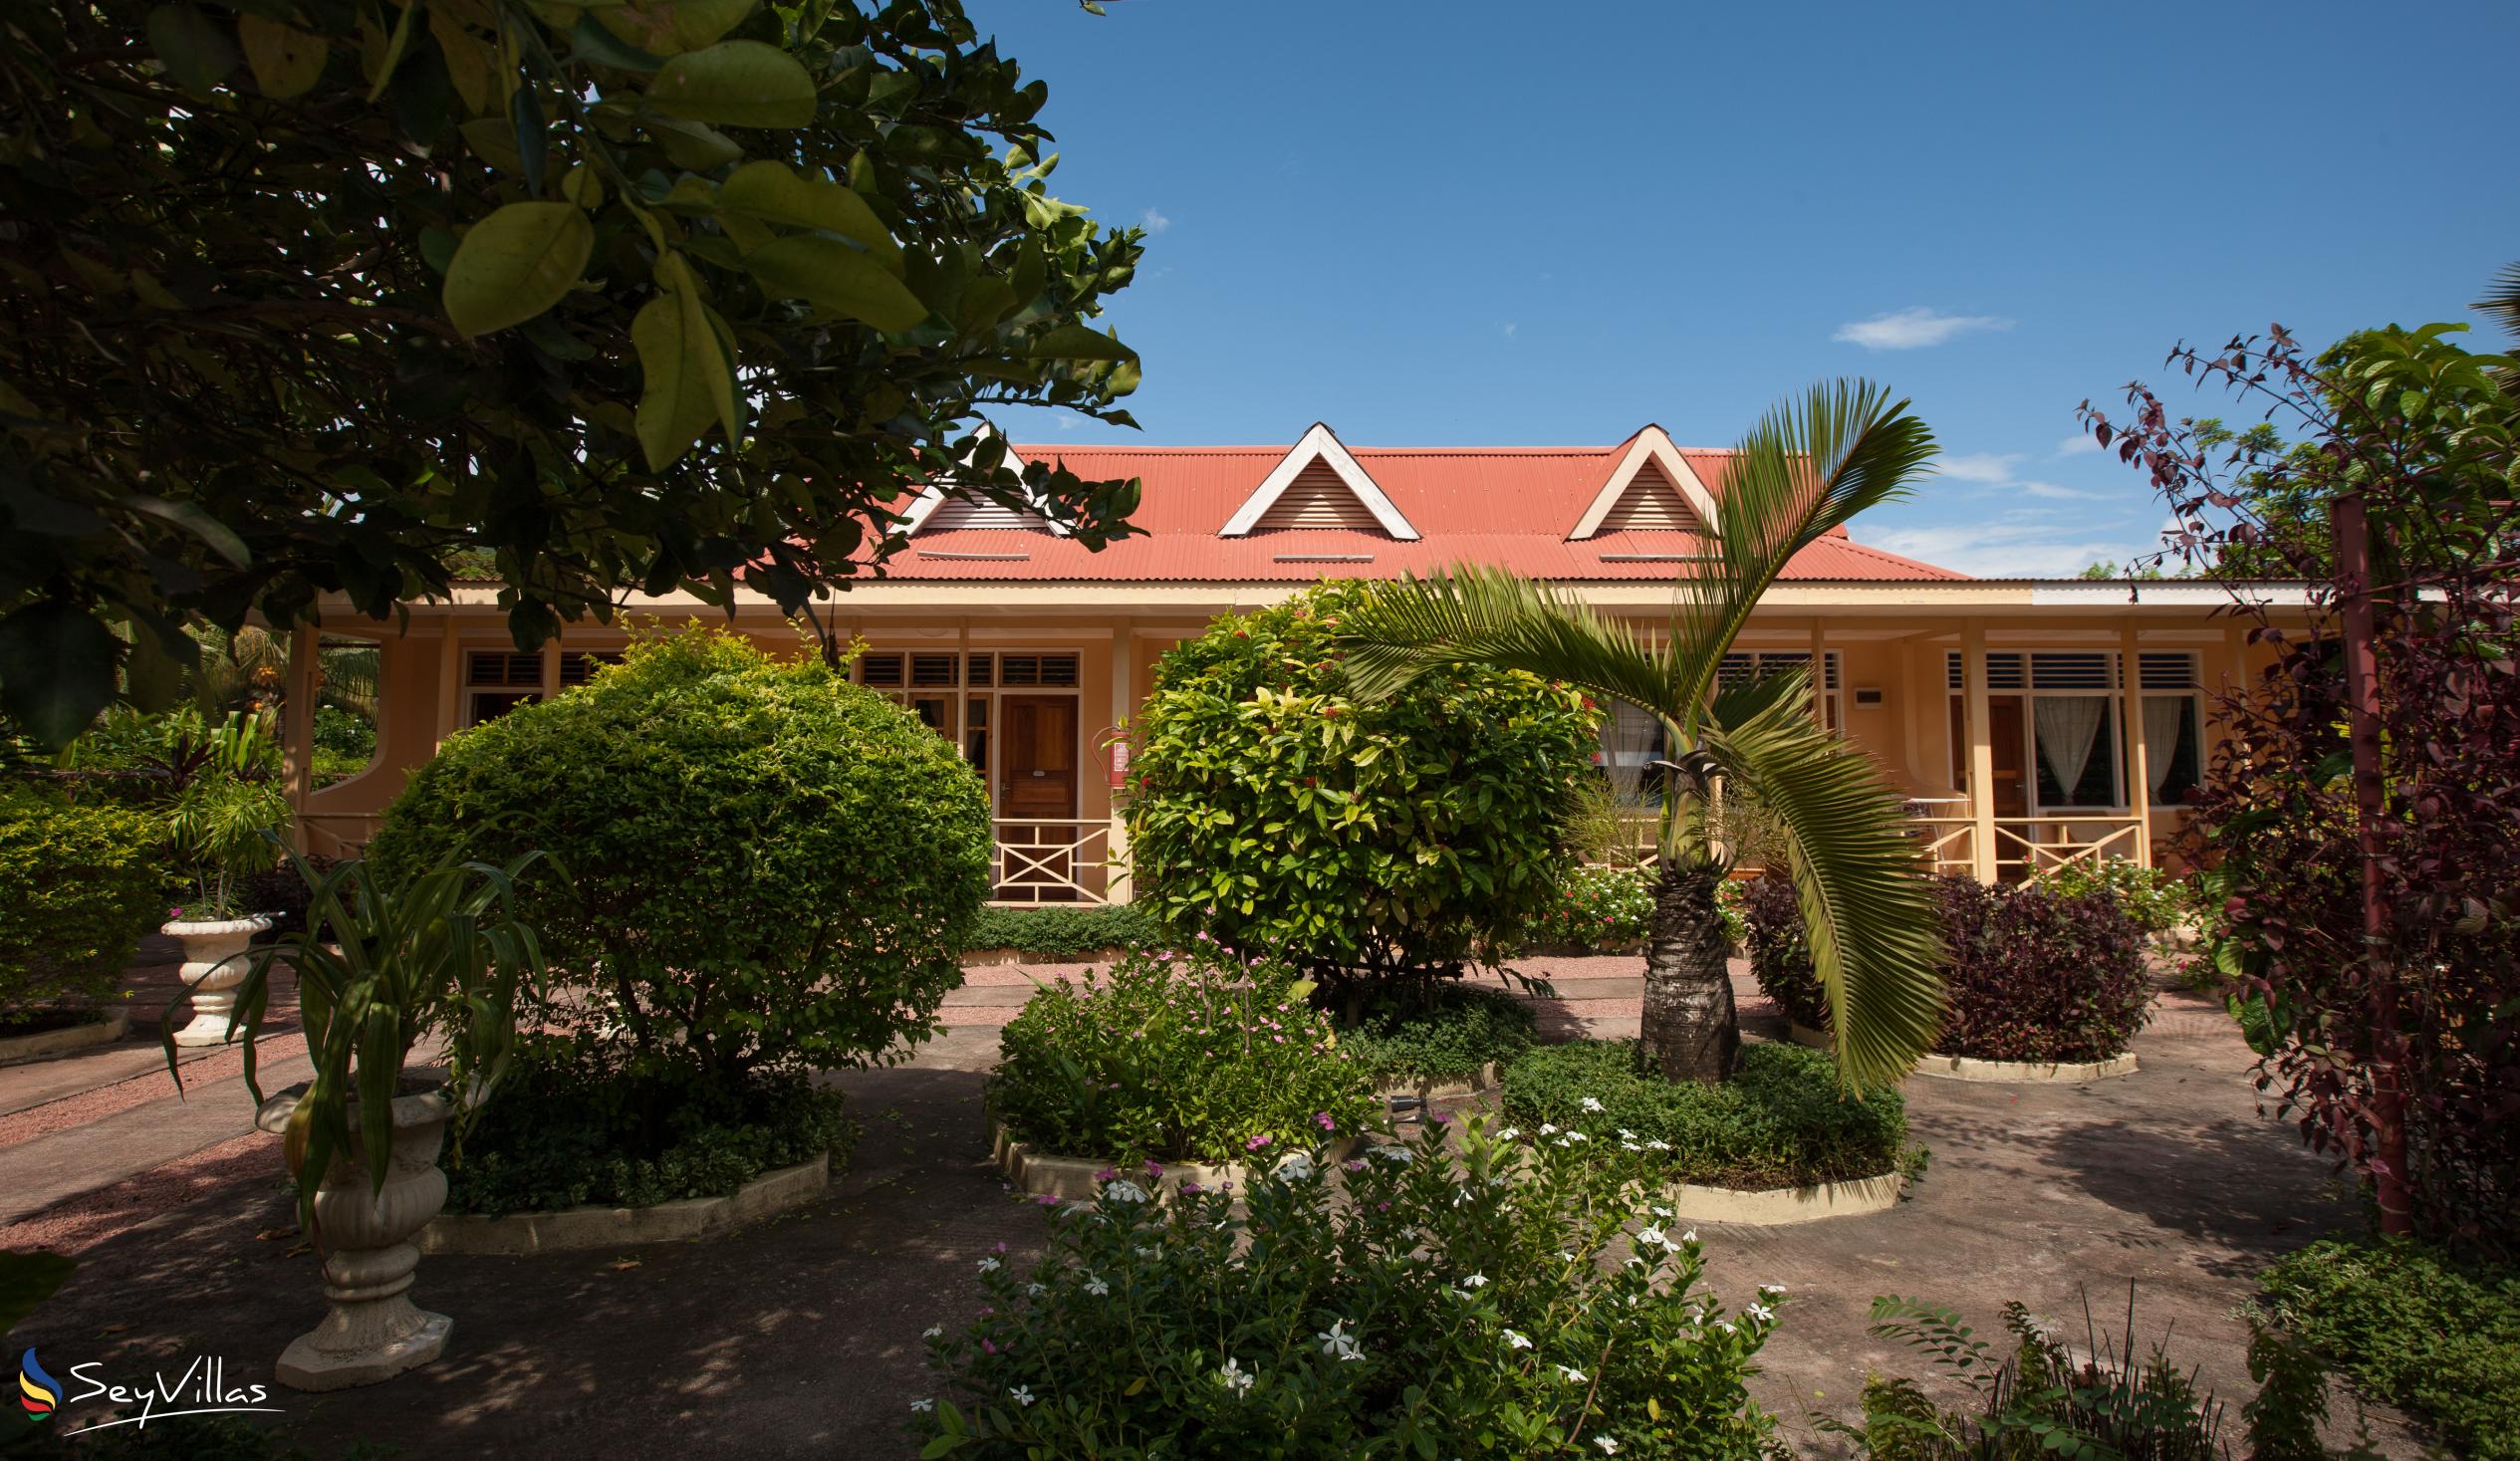 Foto 9: Chez Marston - Aussenbereich - La Digue (Seychellen)